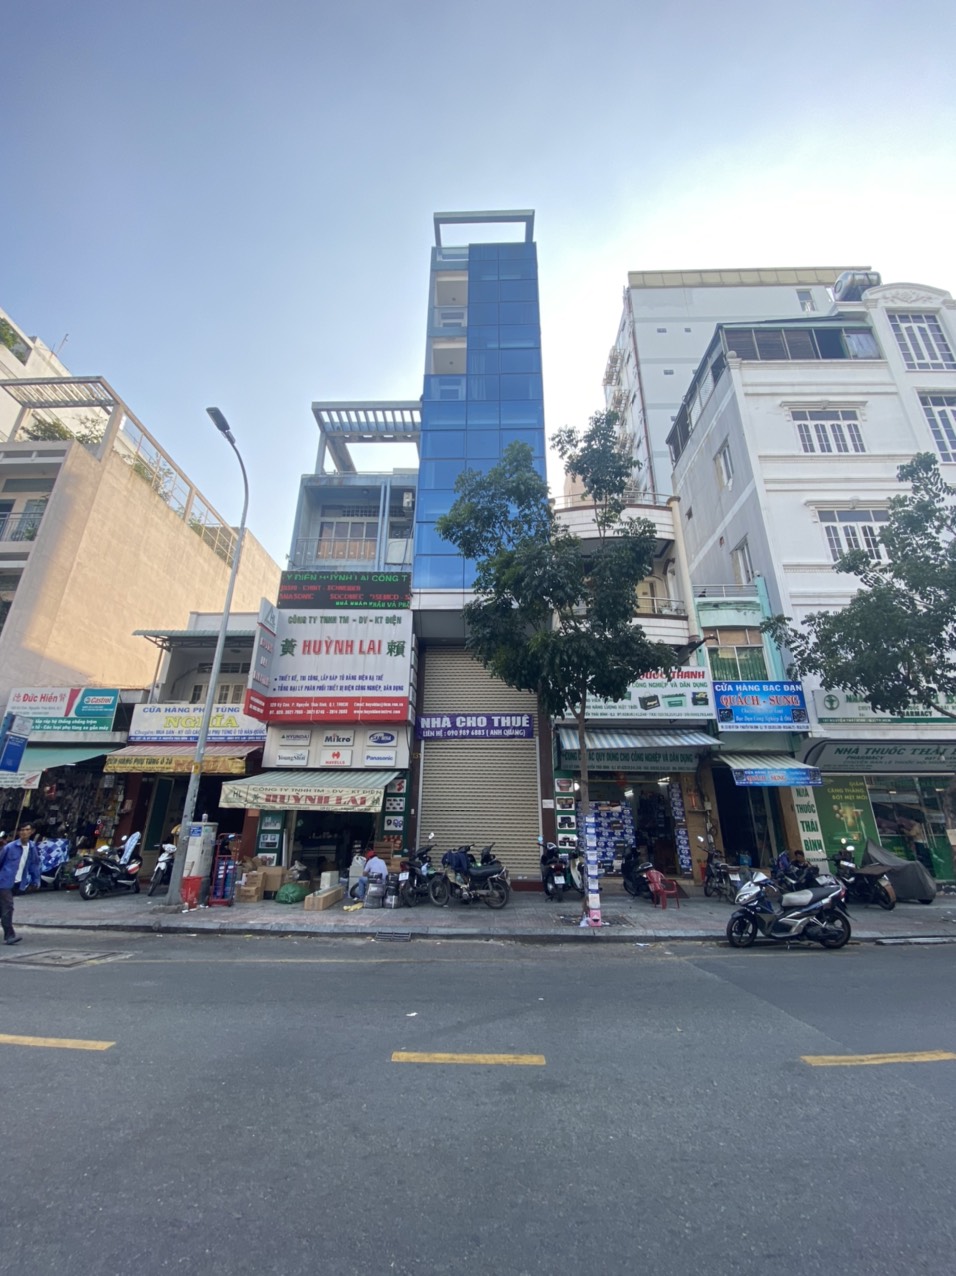 Nhà hộ khẩu quận 1, phường Cô Giang, chỉ 420tr/m2 cho căn nhà 4 tầng mặt tiền đường Trần Đình Xu.